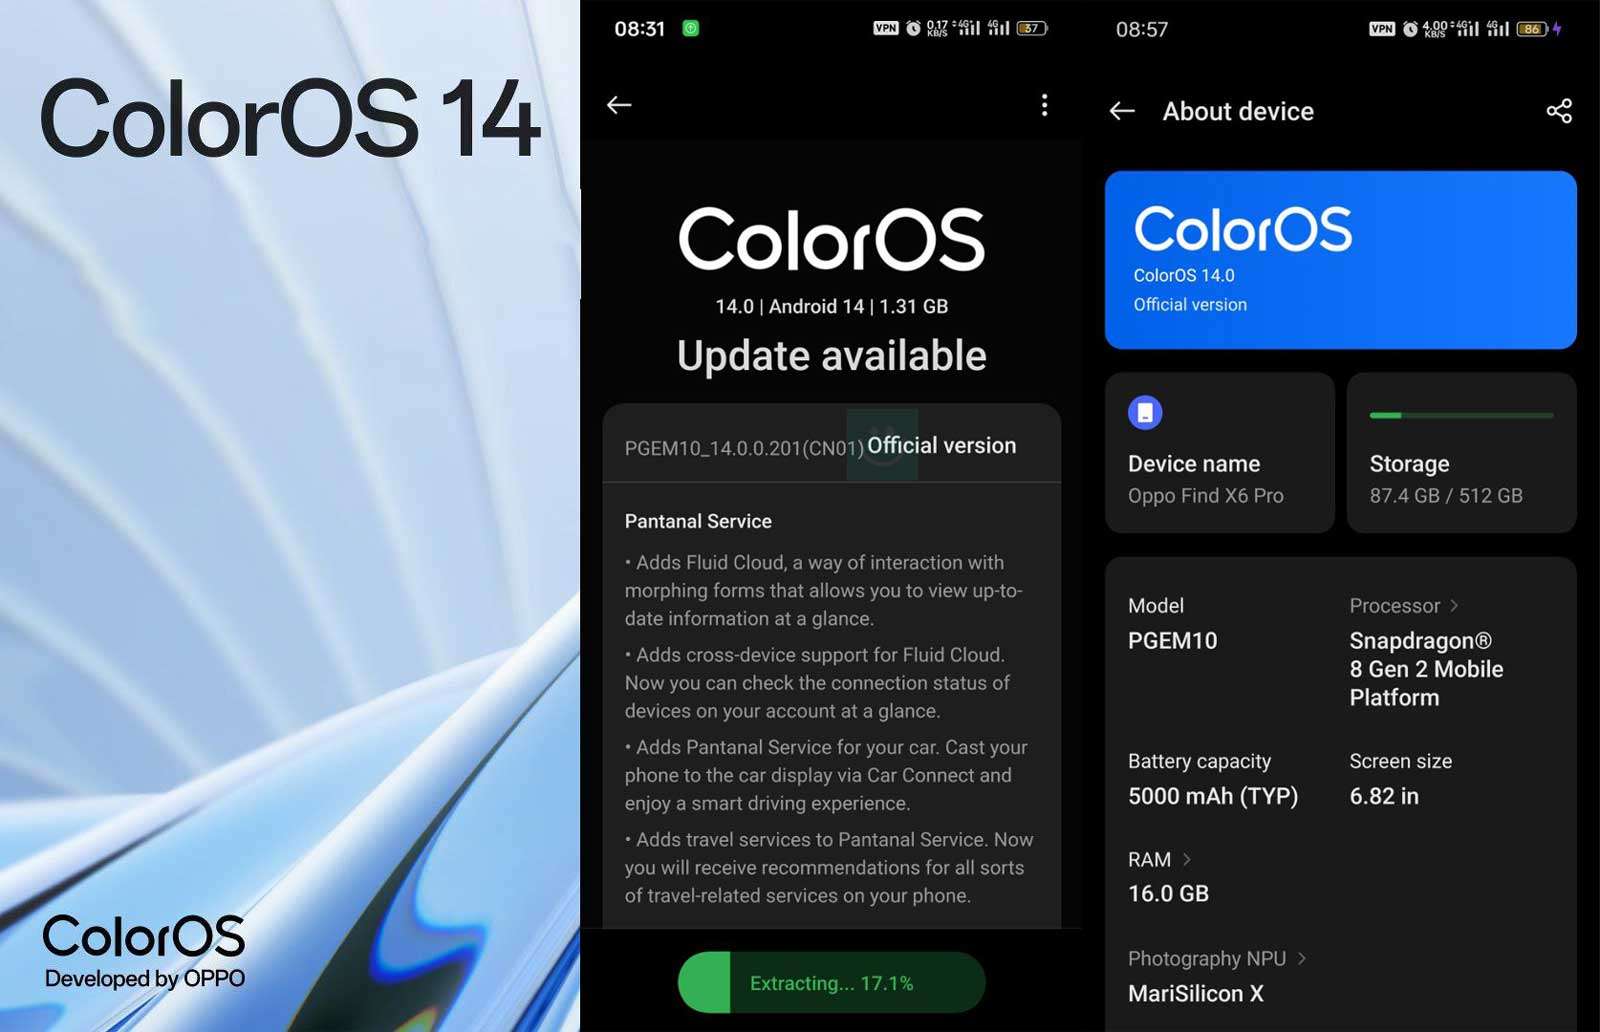 54544545564564 - آپدیت ColorOS 14 برای Oppo Find X6 Pro در ایران منتشر شد